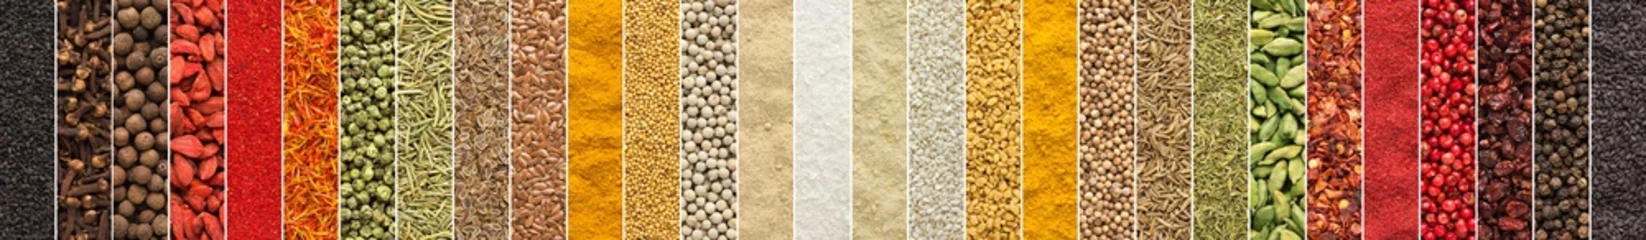 Fototapete Aromatisch indischer Gewürzhintergrund. Collage aus Gewürzen und Kräutern für das Design von Lebensmittelverpackungen